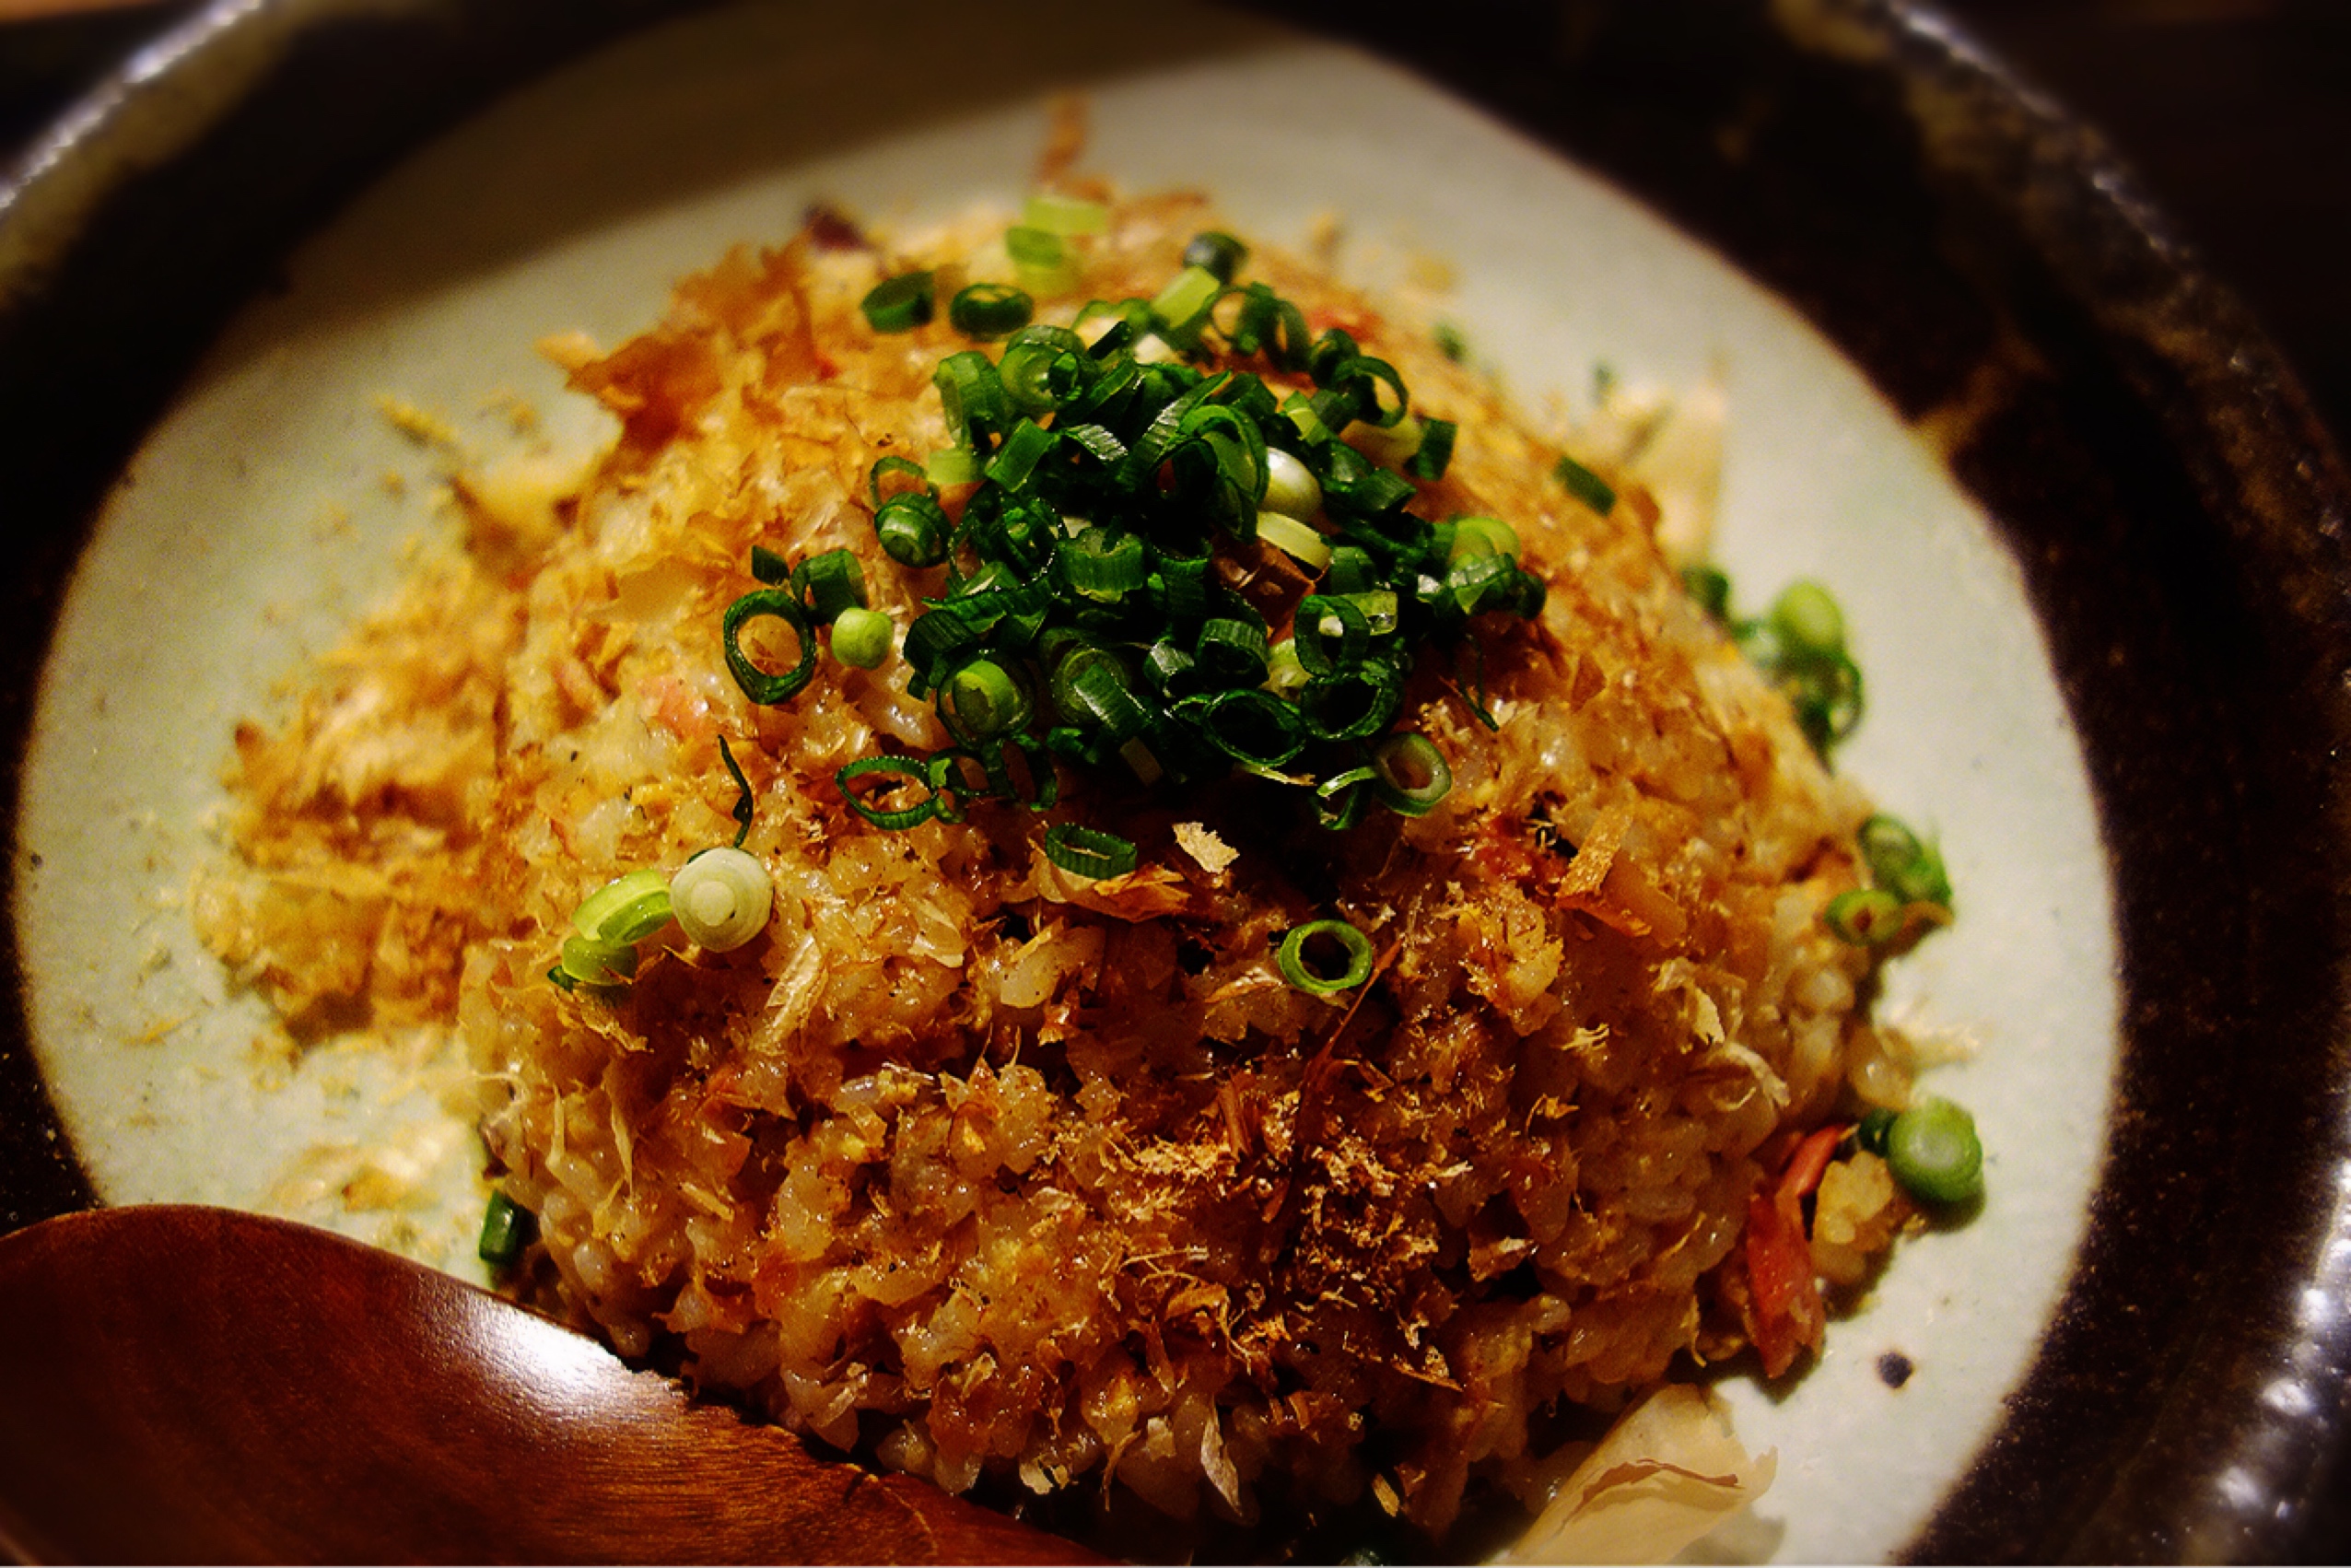 麺や和楽さんの味しょうがとなまり節の焼飯〜ひつまぶし風〜